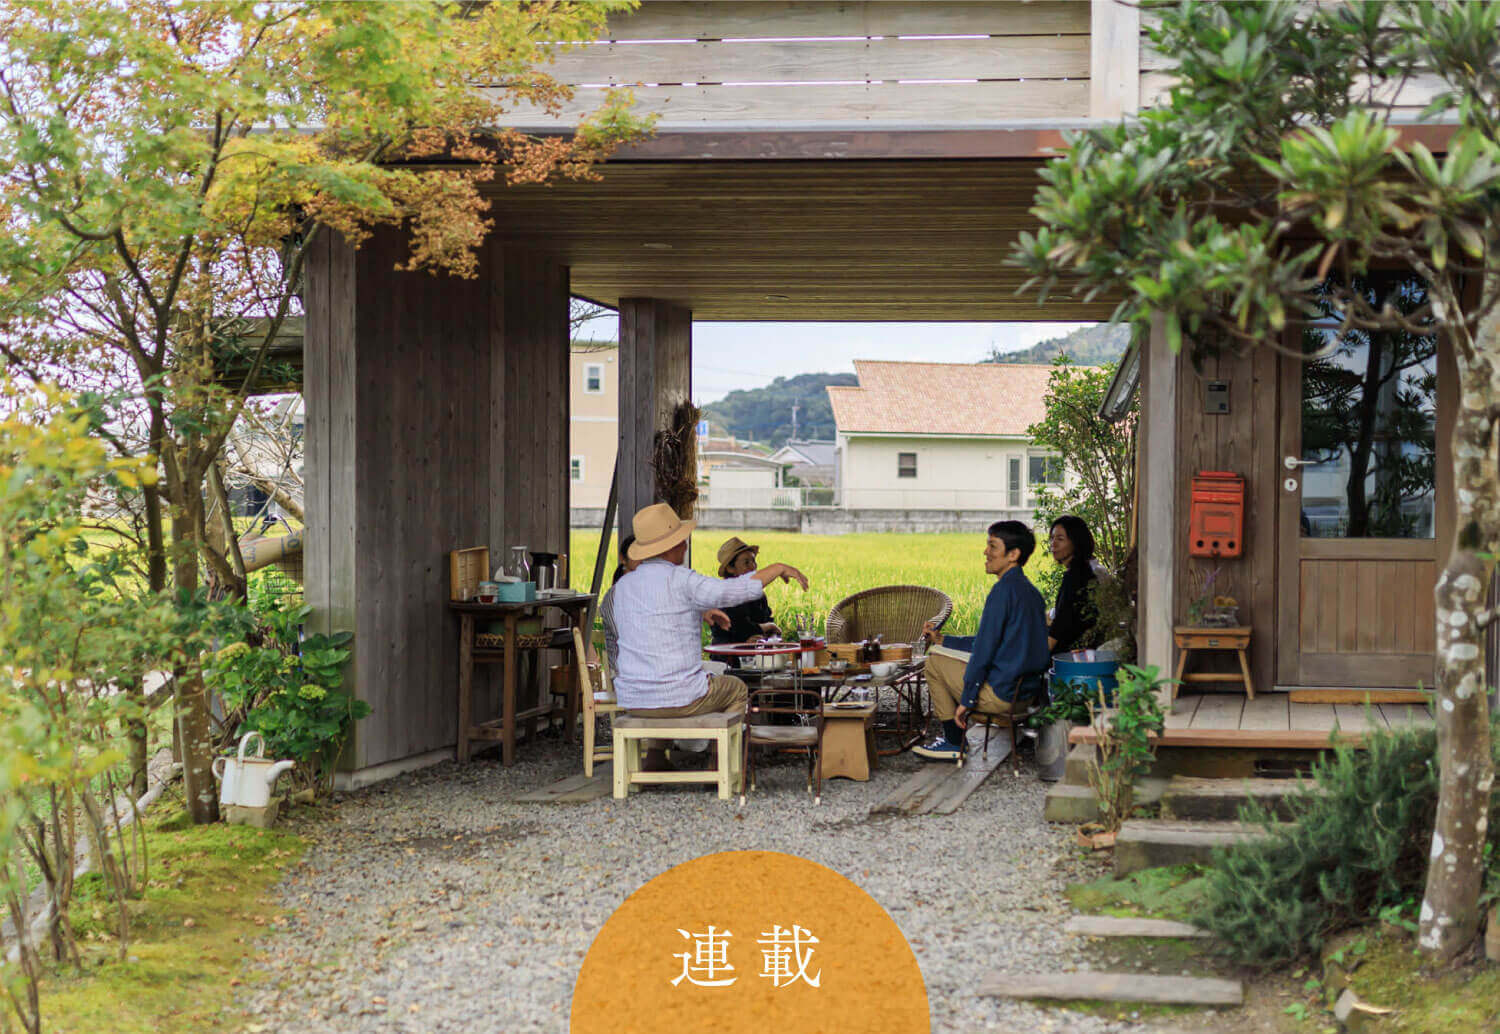 シンケンスタイル 福岡 鹿児島で 自然を感じる家づくり